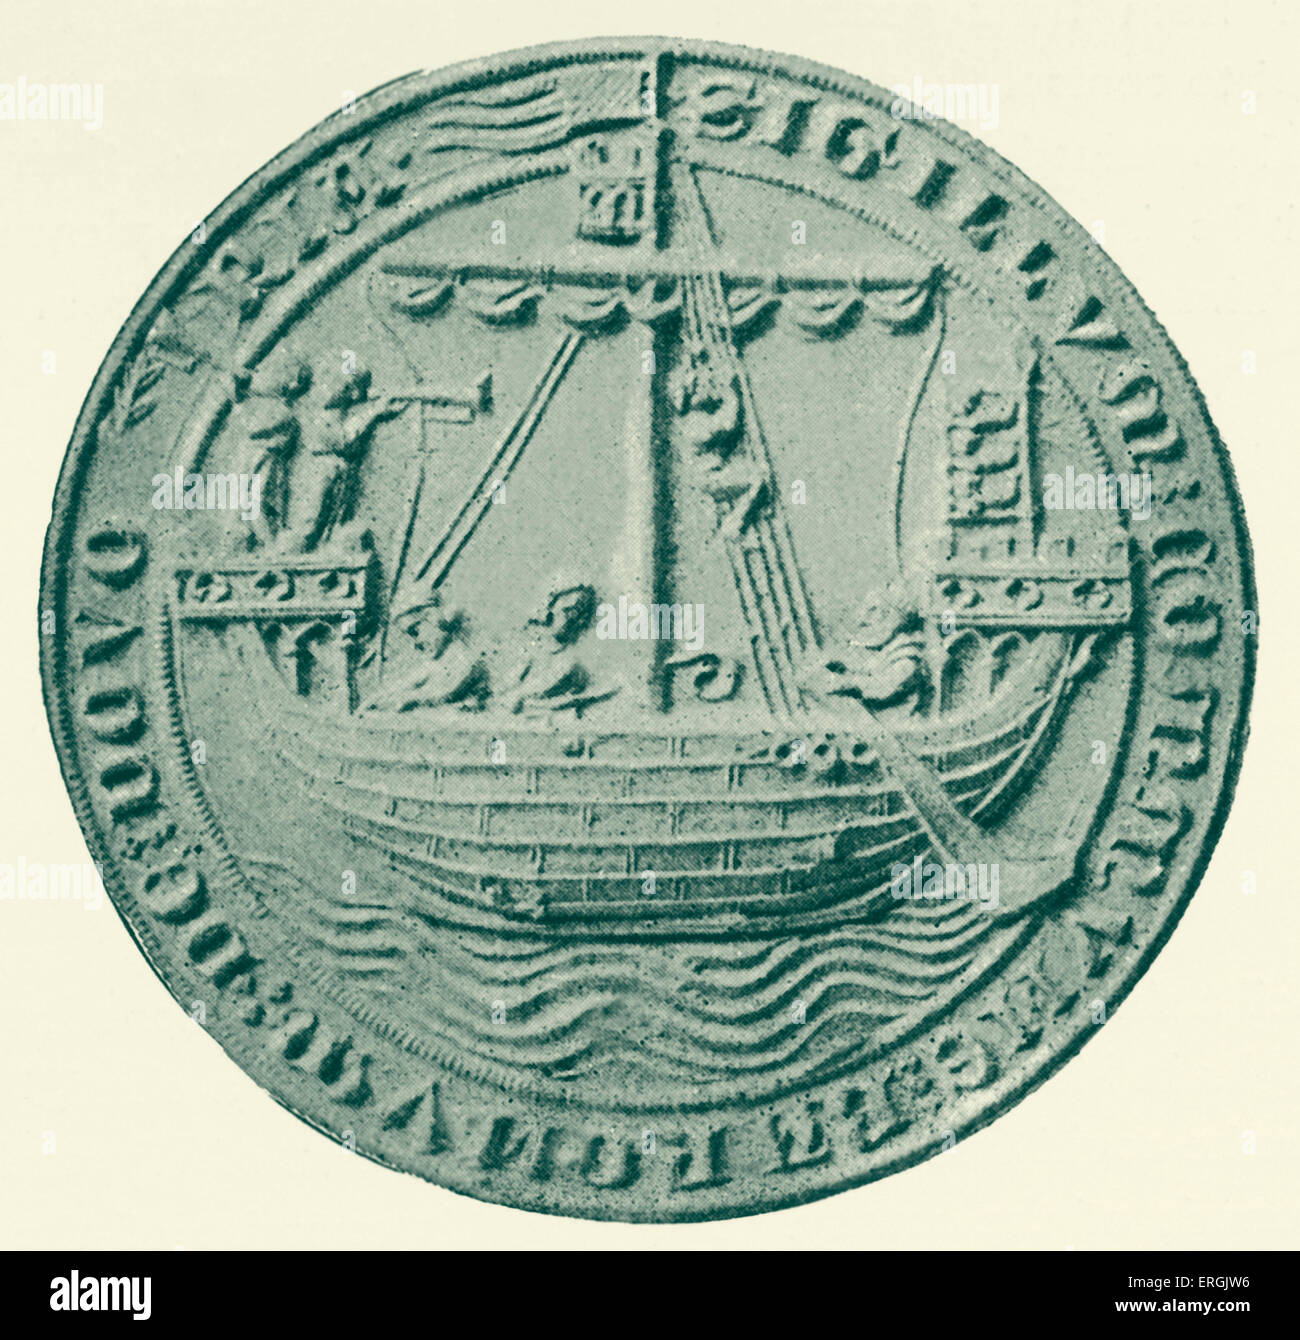 Sceau de Dover, 1305. Marche arrière. Ville côtière dans le Kent, UK. Représentant un navire. Banque D'Images